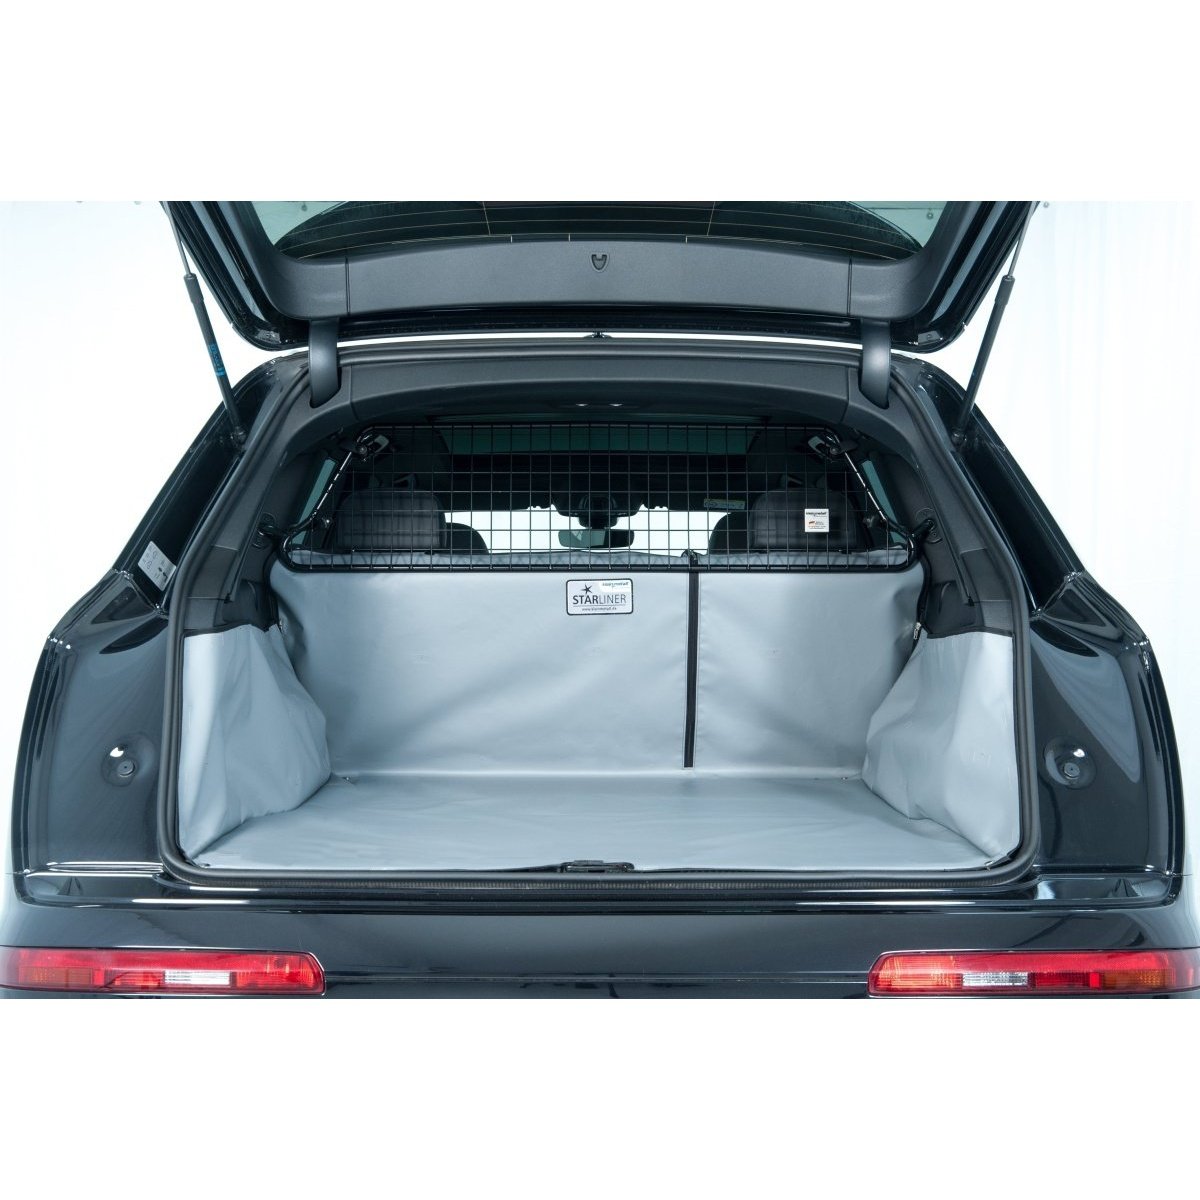 Kleinmetall Starliner Kofferraumwanne für VW Golf VII + e-Golf Bj. 2012 - 2020 grau tierxxl-de